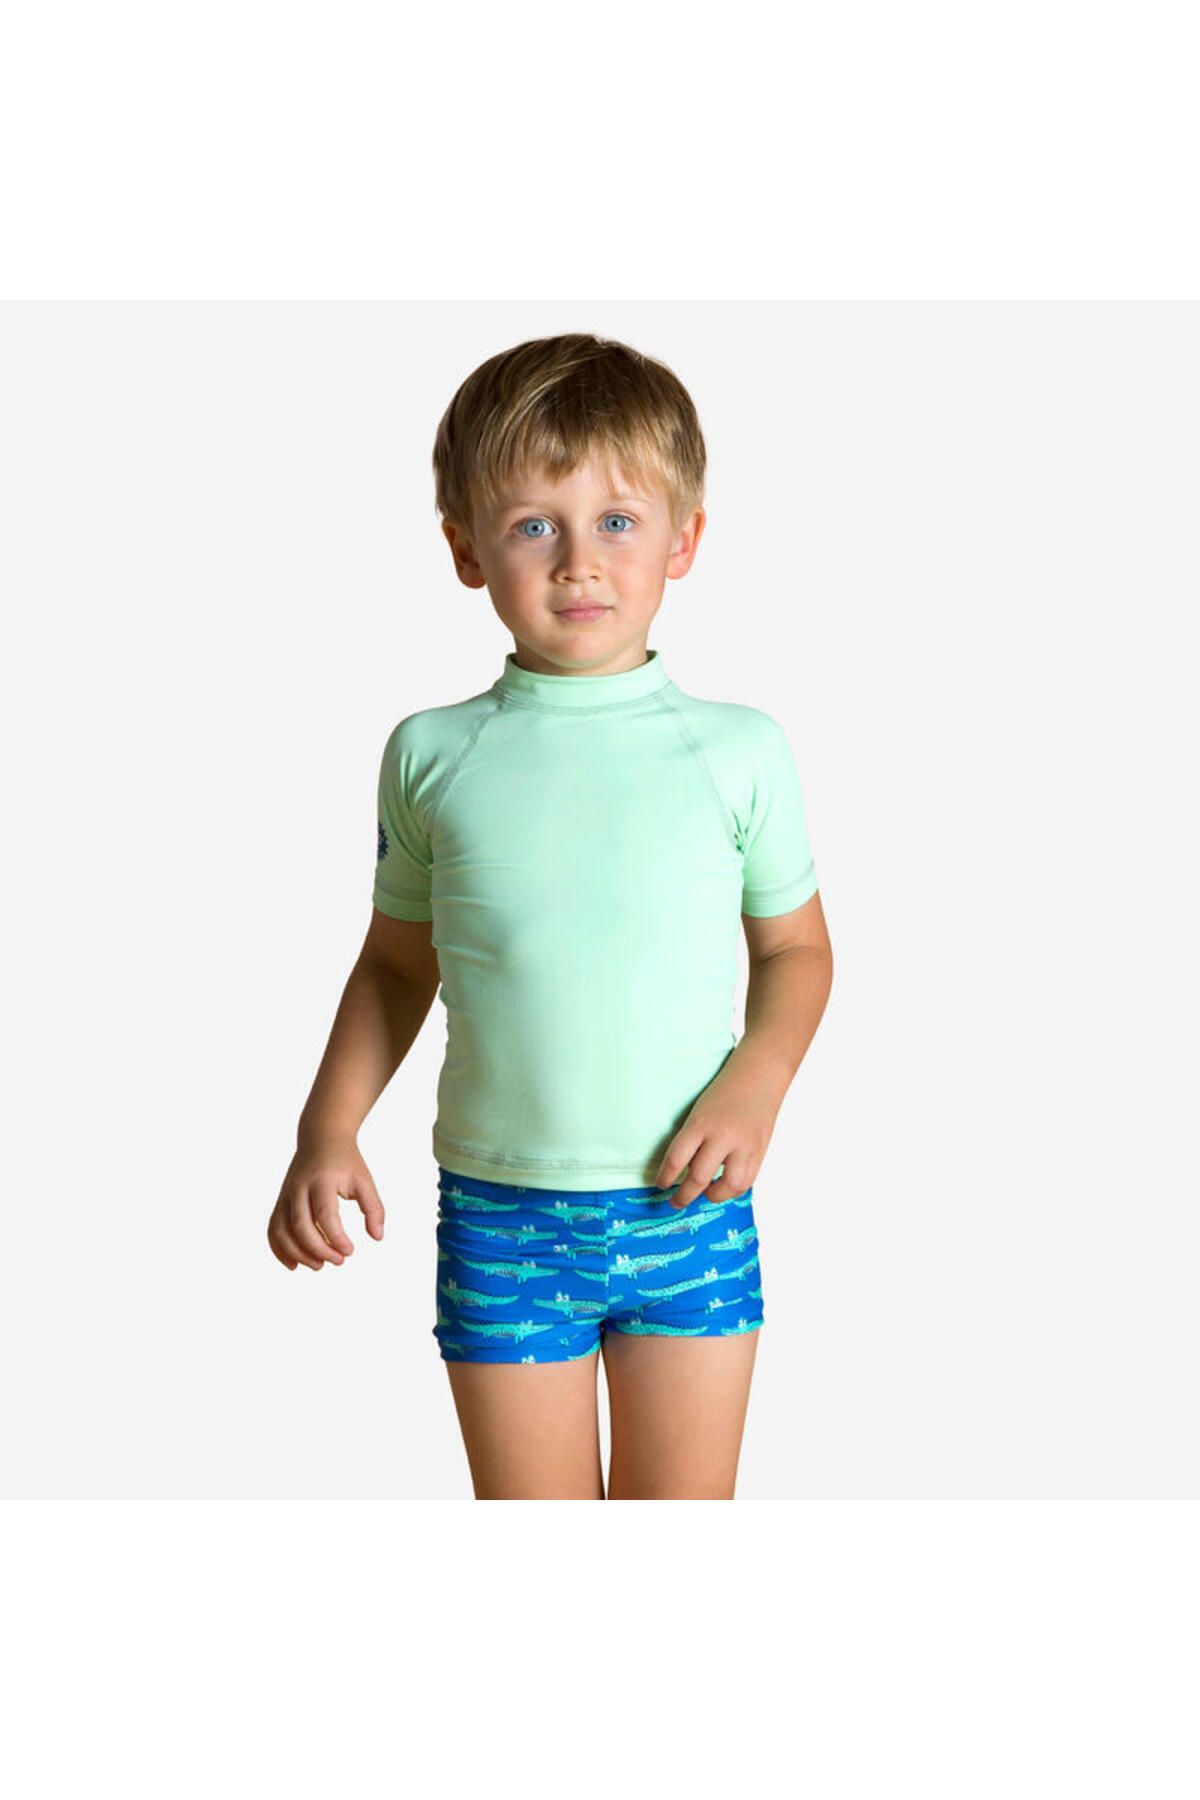 Decathlon Bebek UV Korumalı Kısa Kollu Tişört - Açık Yeşil ALT ÜST TAKIM